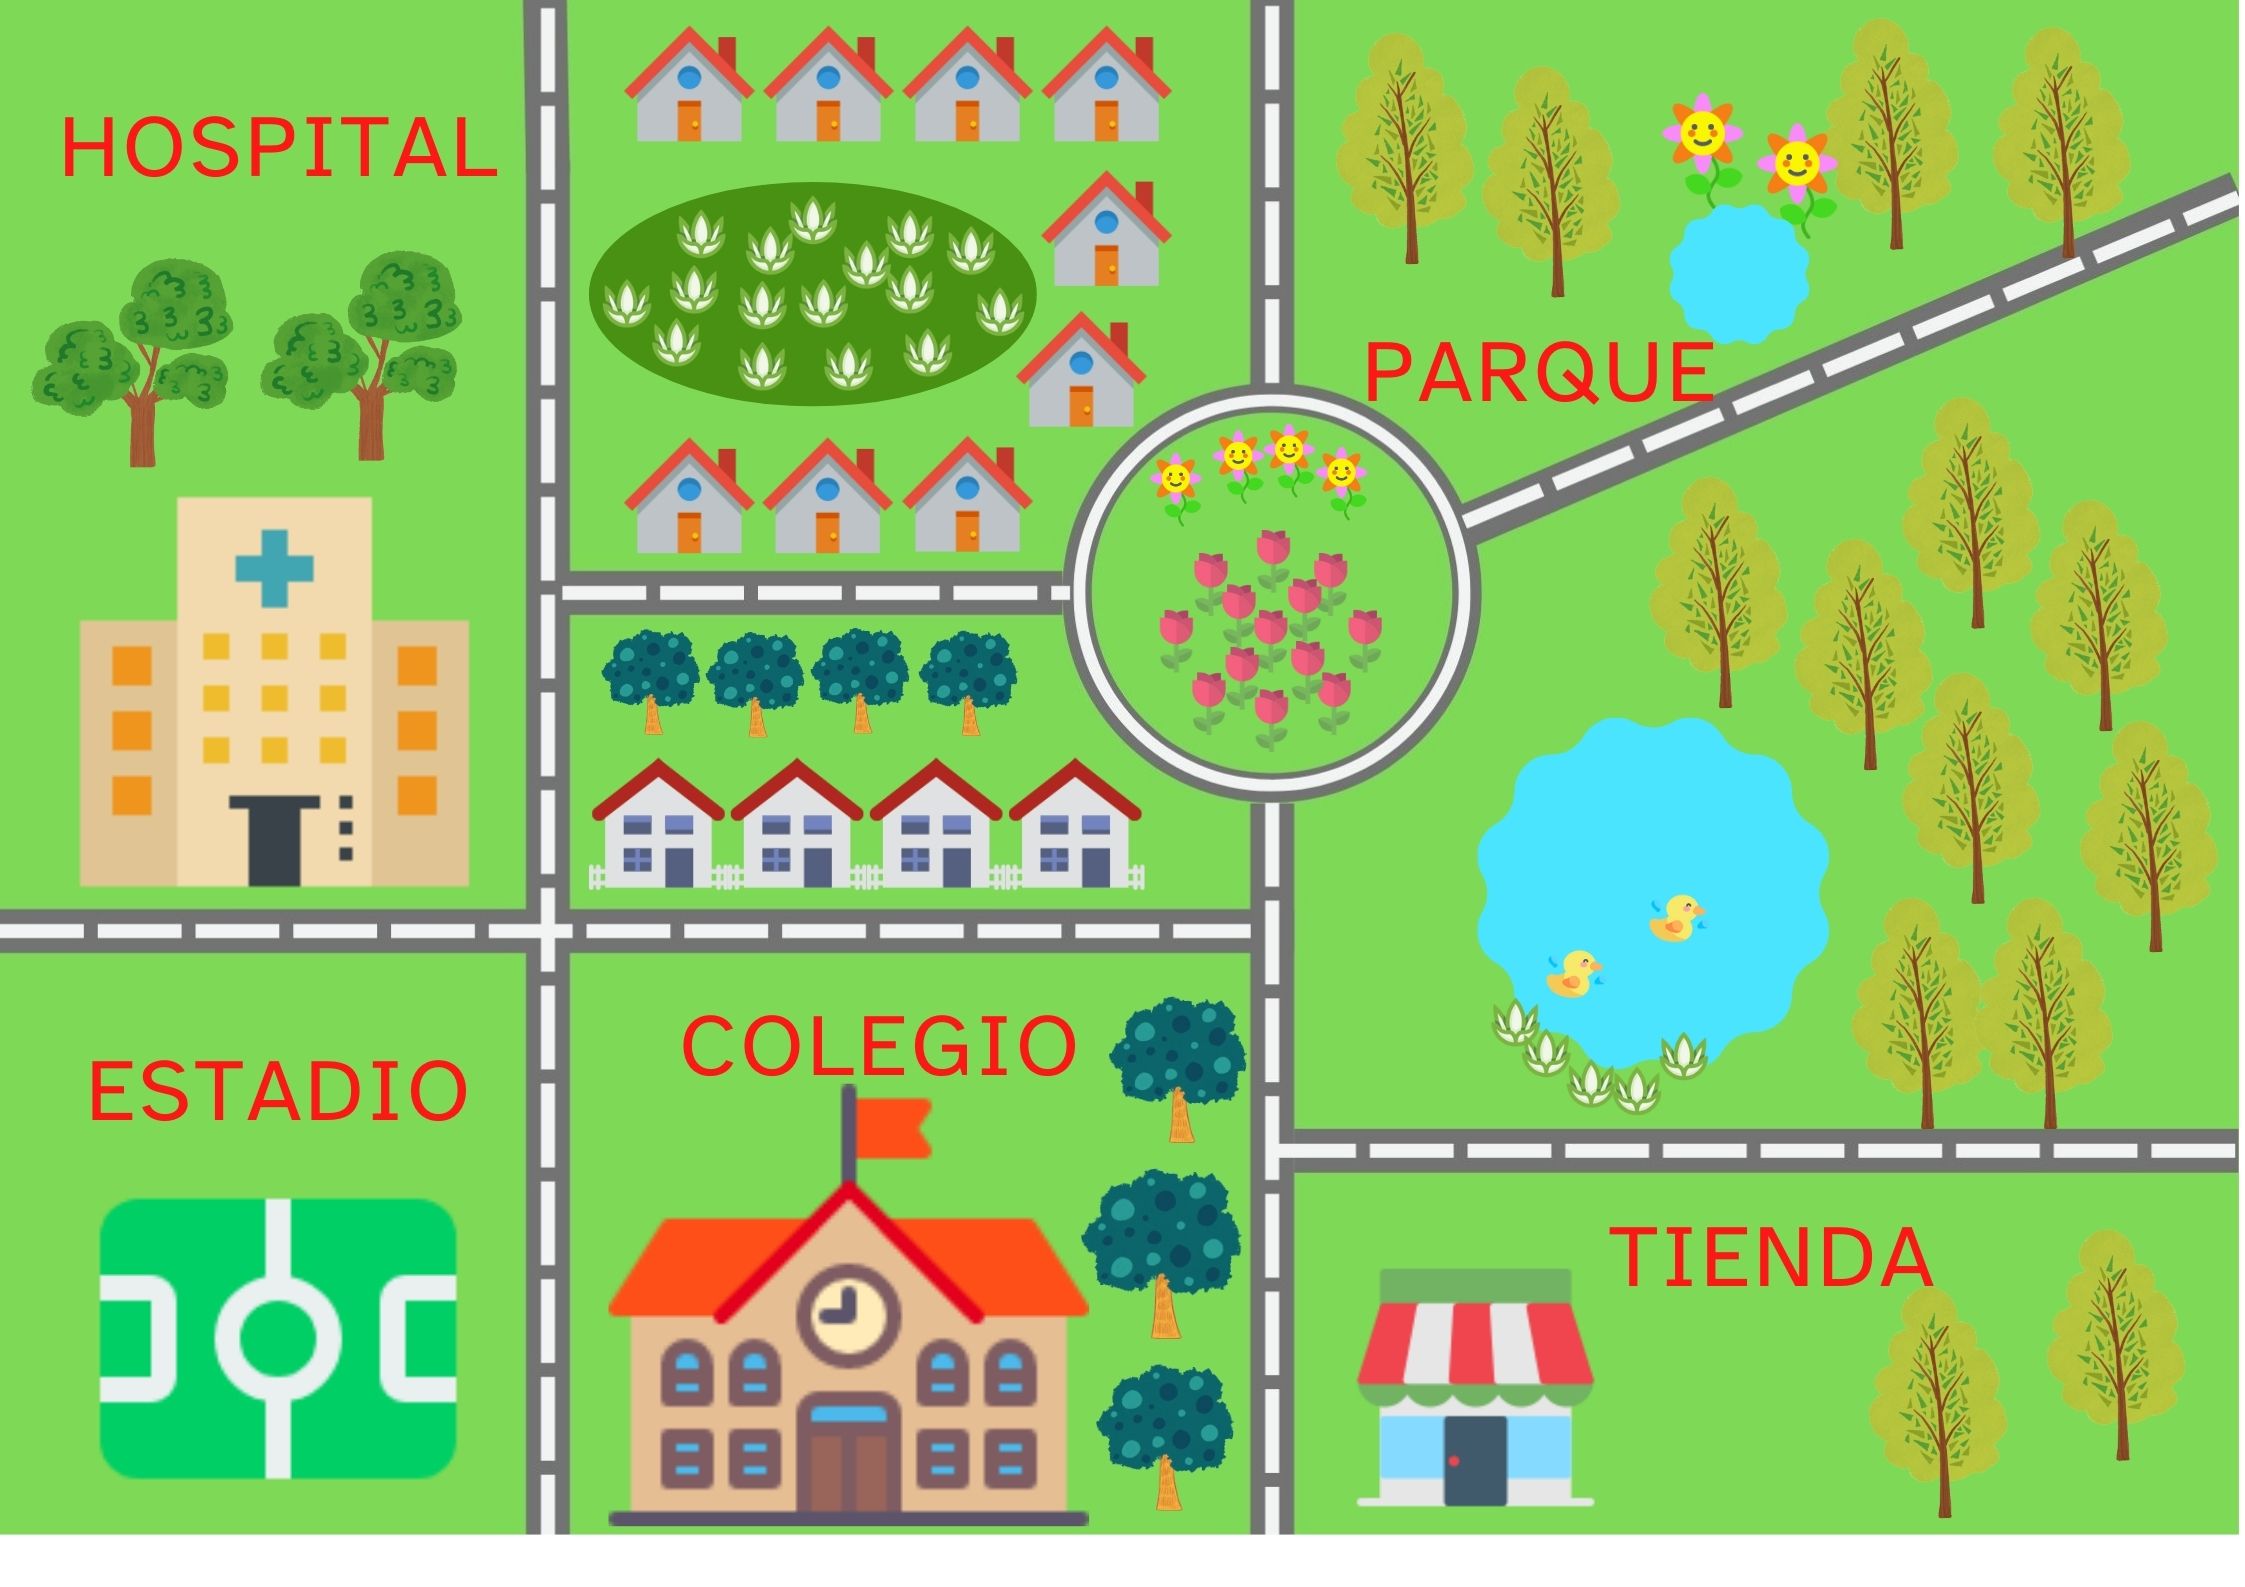 La imagen muestra una parte del plano de una ciudad, donde podemos ver un hospital, unas casas, un estadio, un colegio, una tienda y un parque